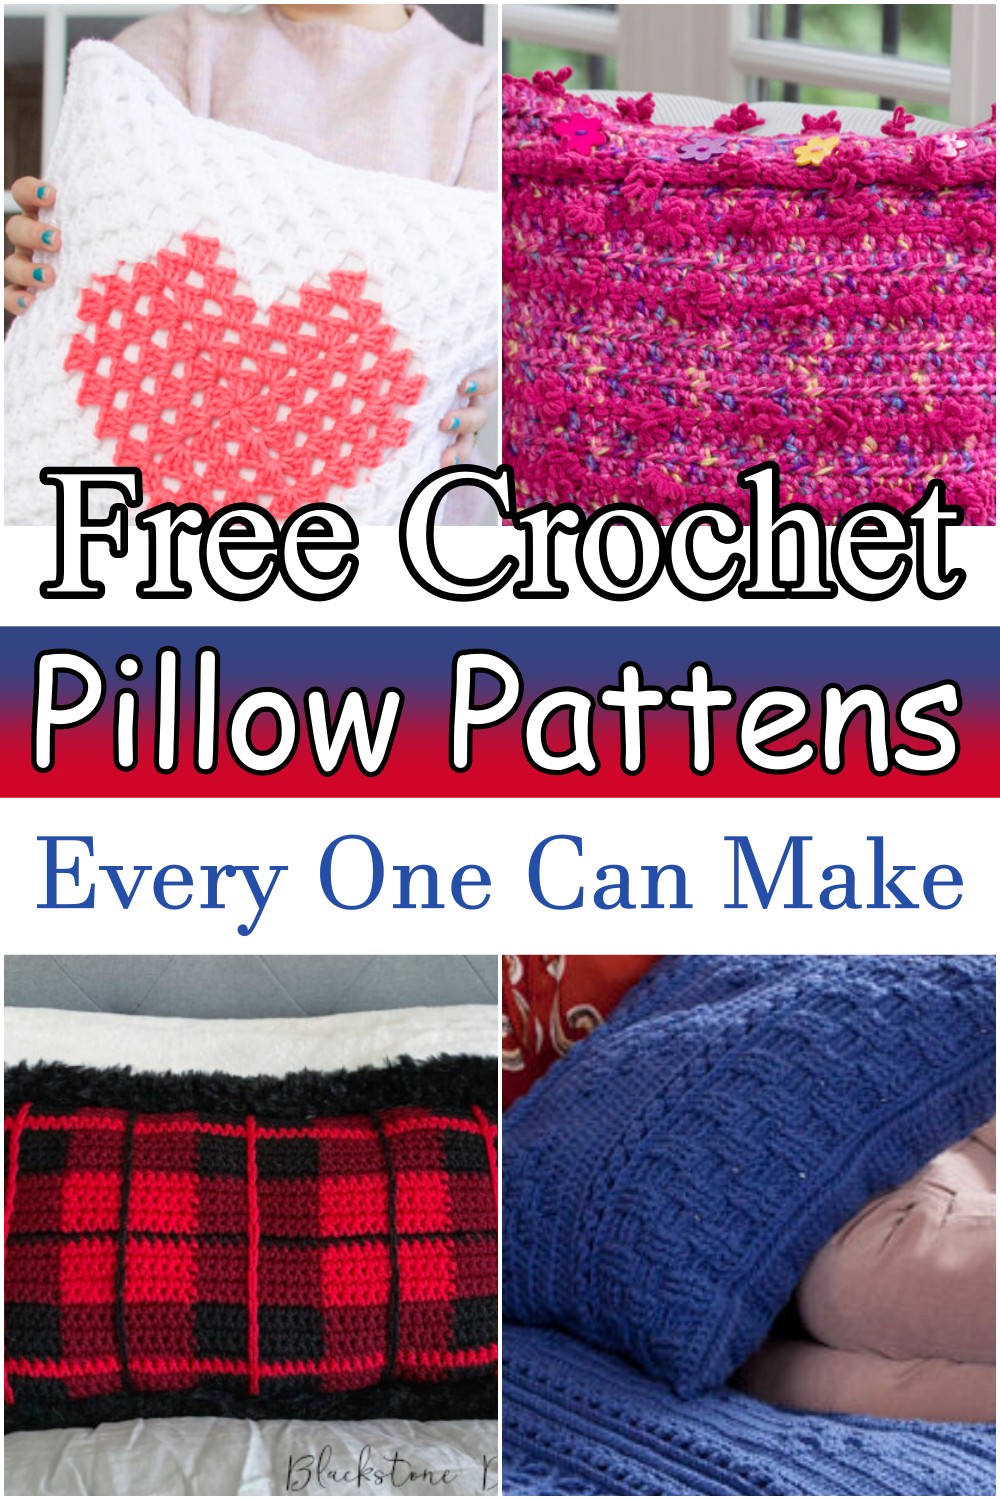 15 Free Crochet Pillow Patterns